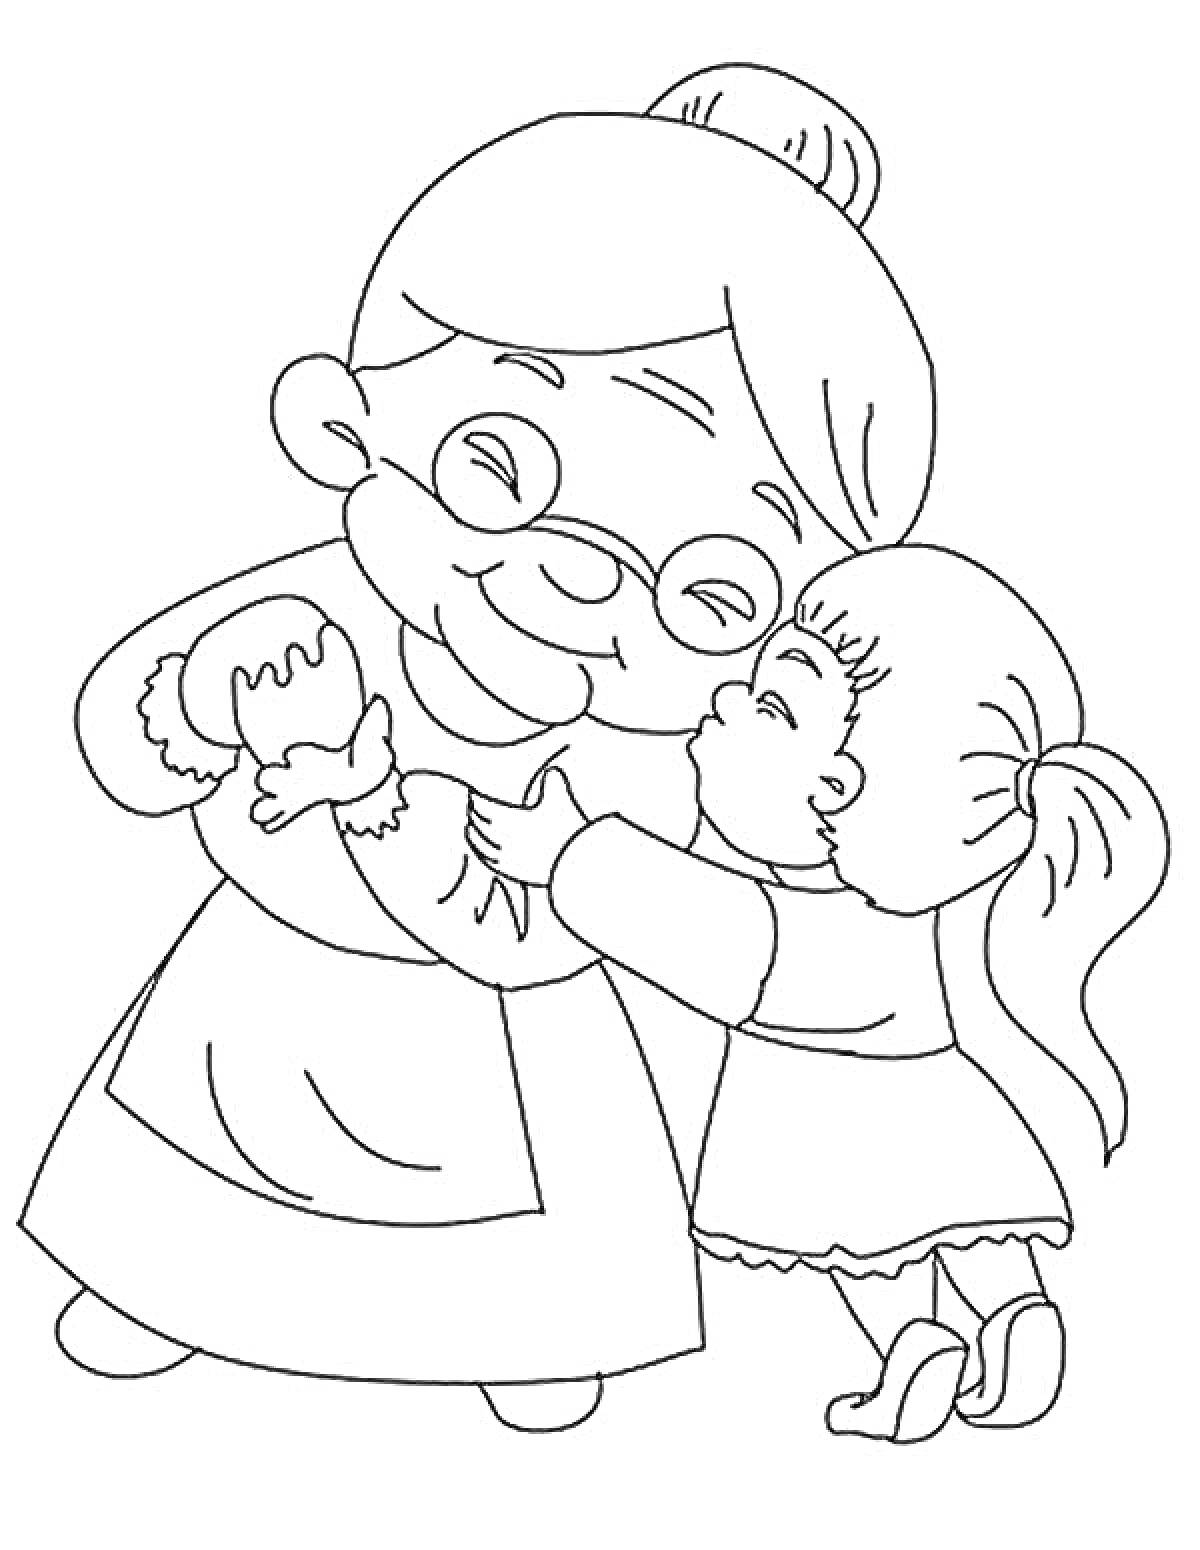 Раскраска бабушка в очках обнимает маленькую девочку с хвостиком